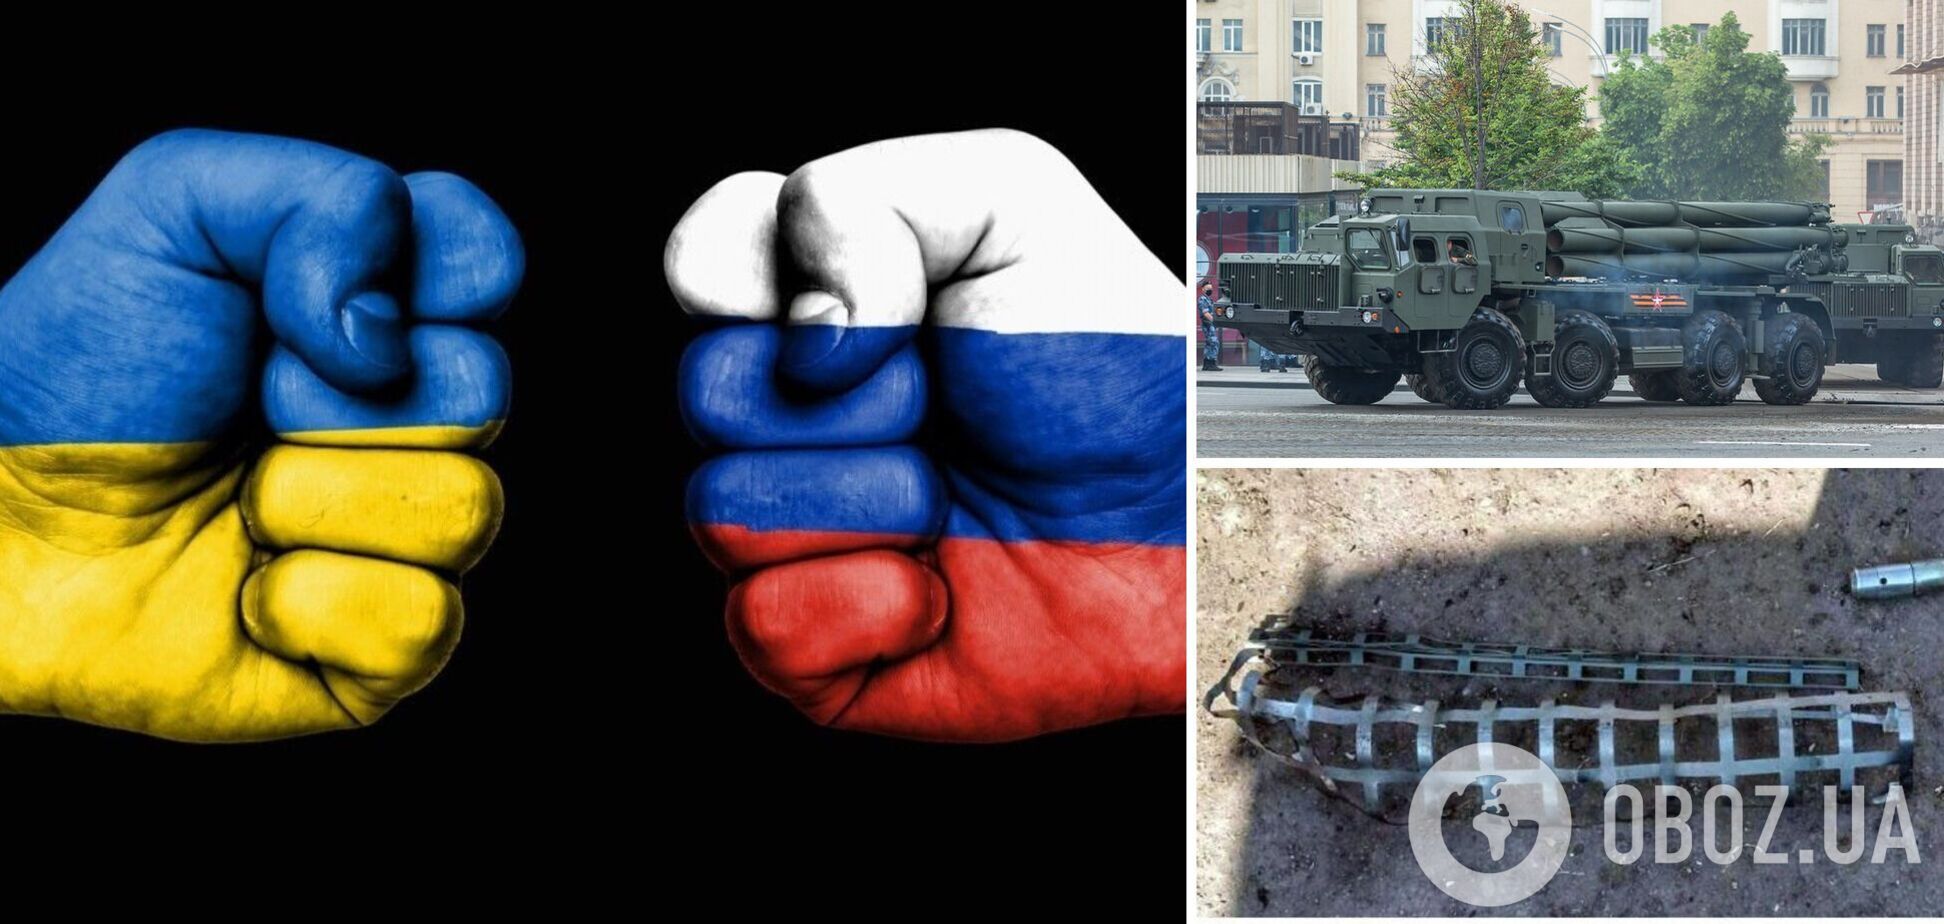 РФ использует кассетные боеприпасы против украинских городов